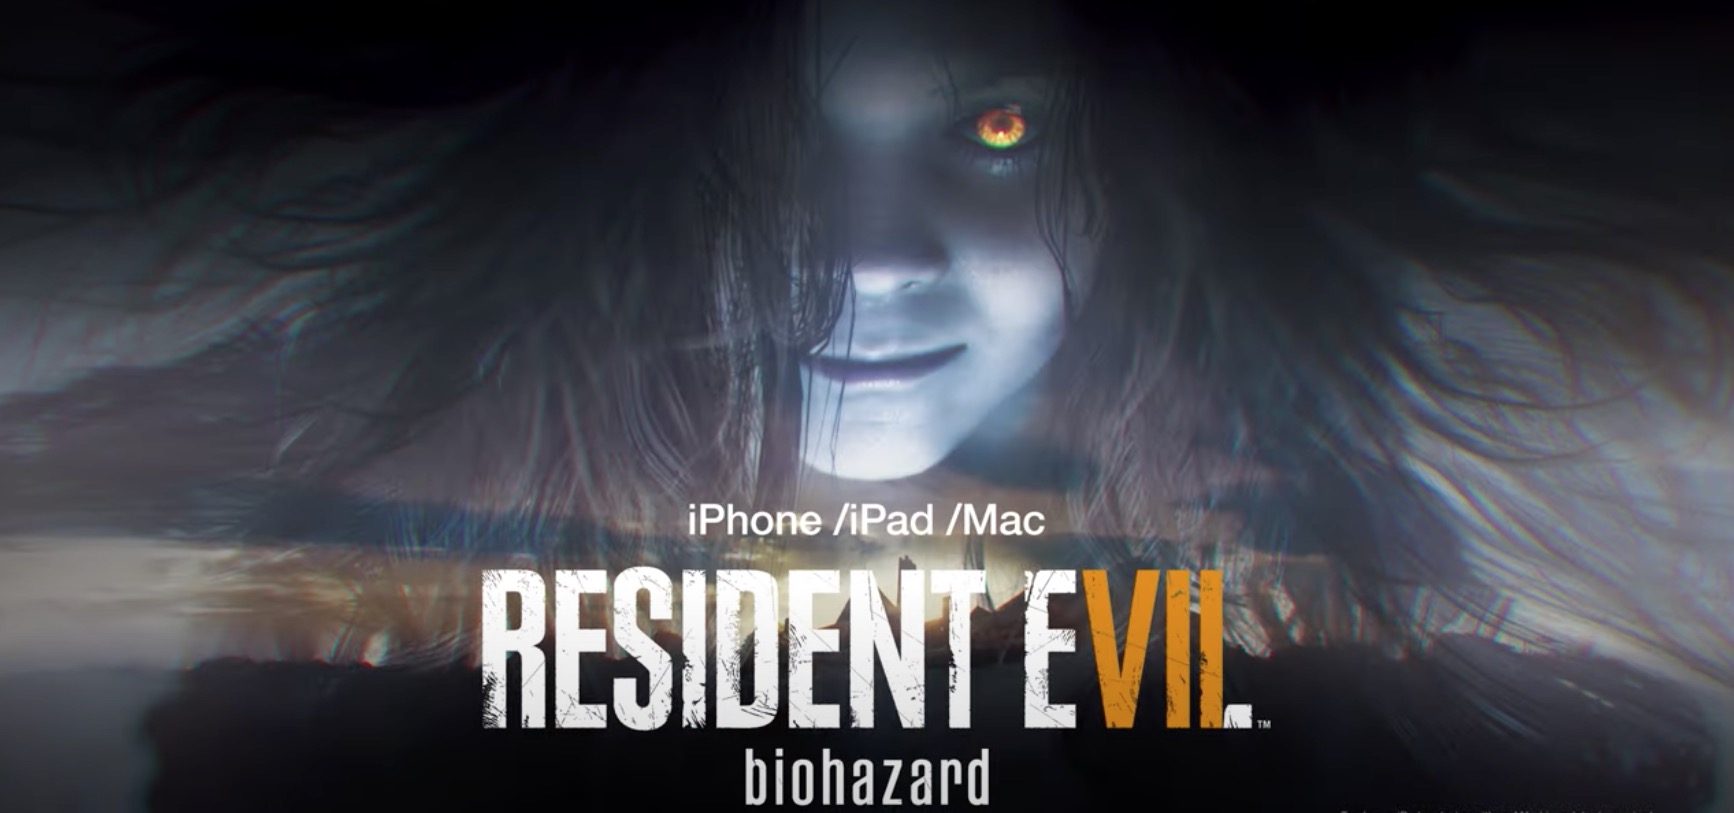 Вышла Resident Evil 7 biohazard для iPhone, iPad и Mac